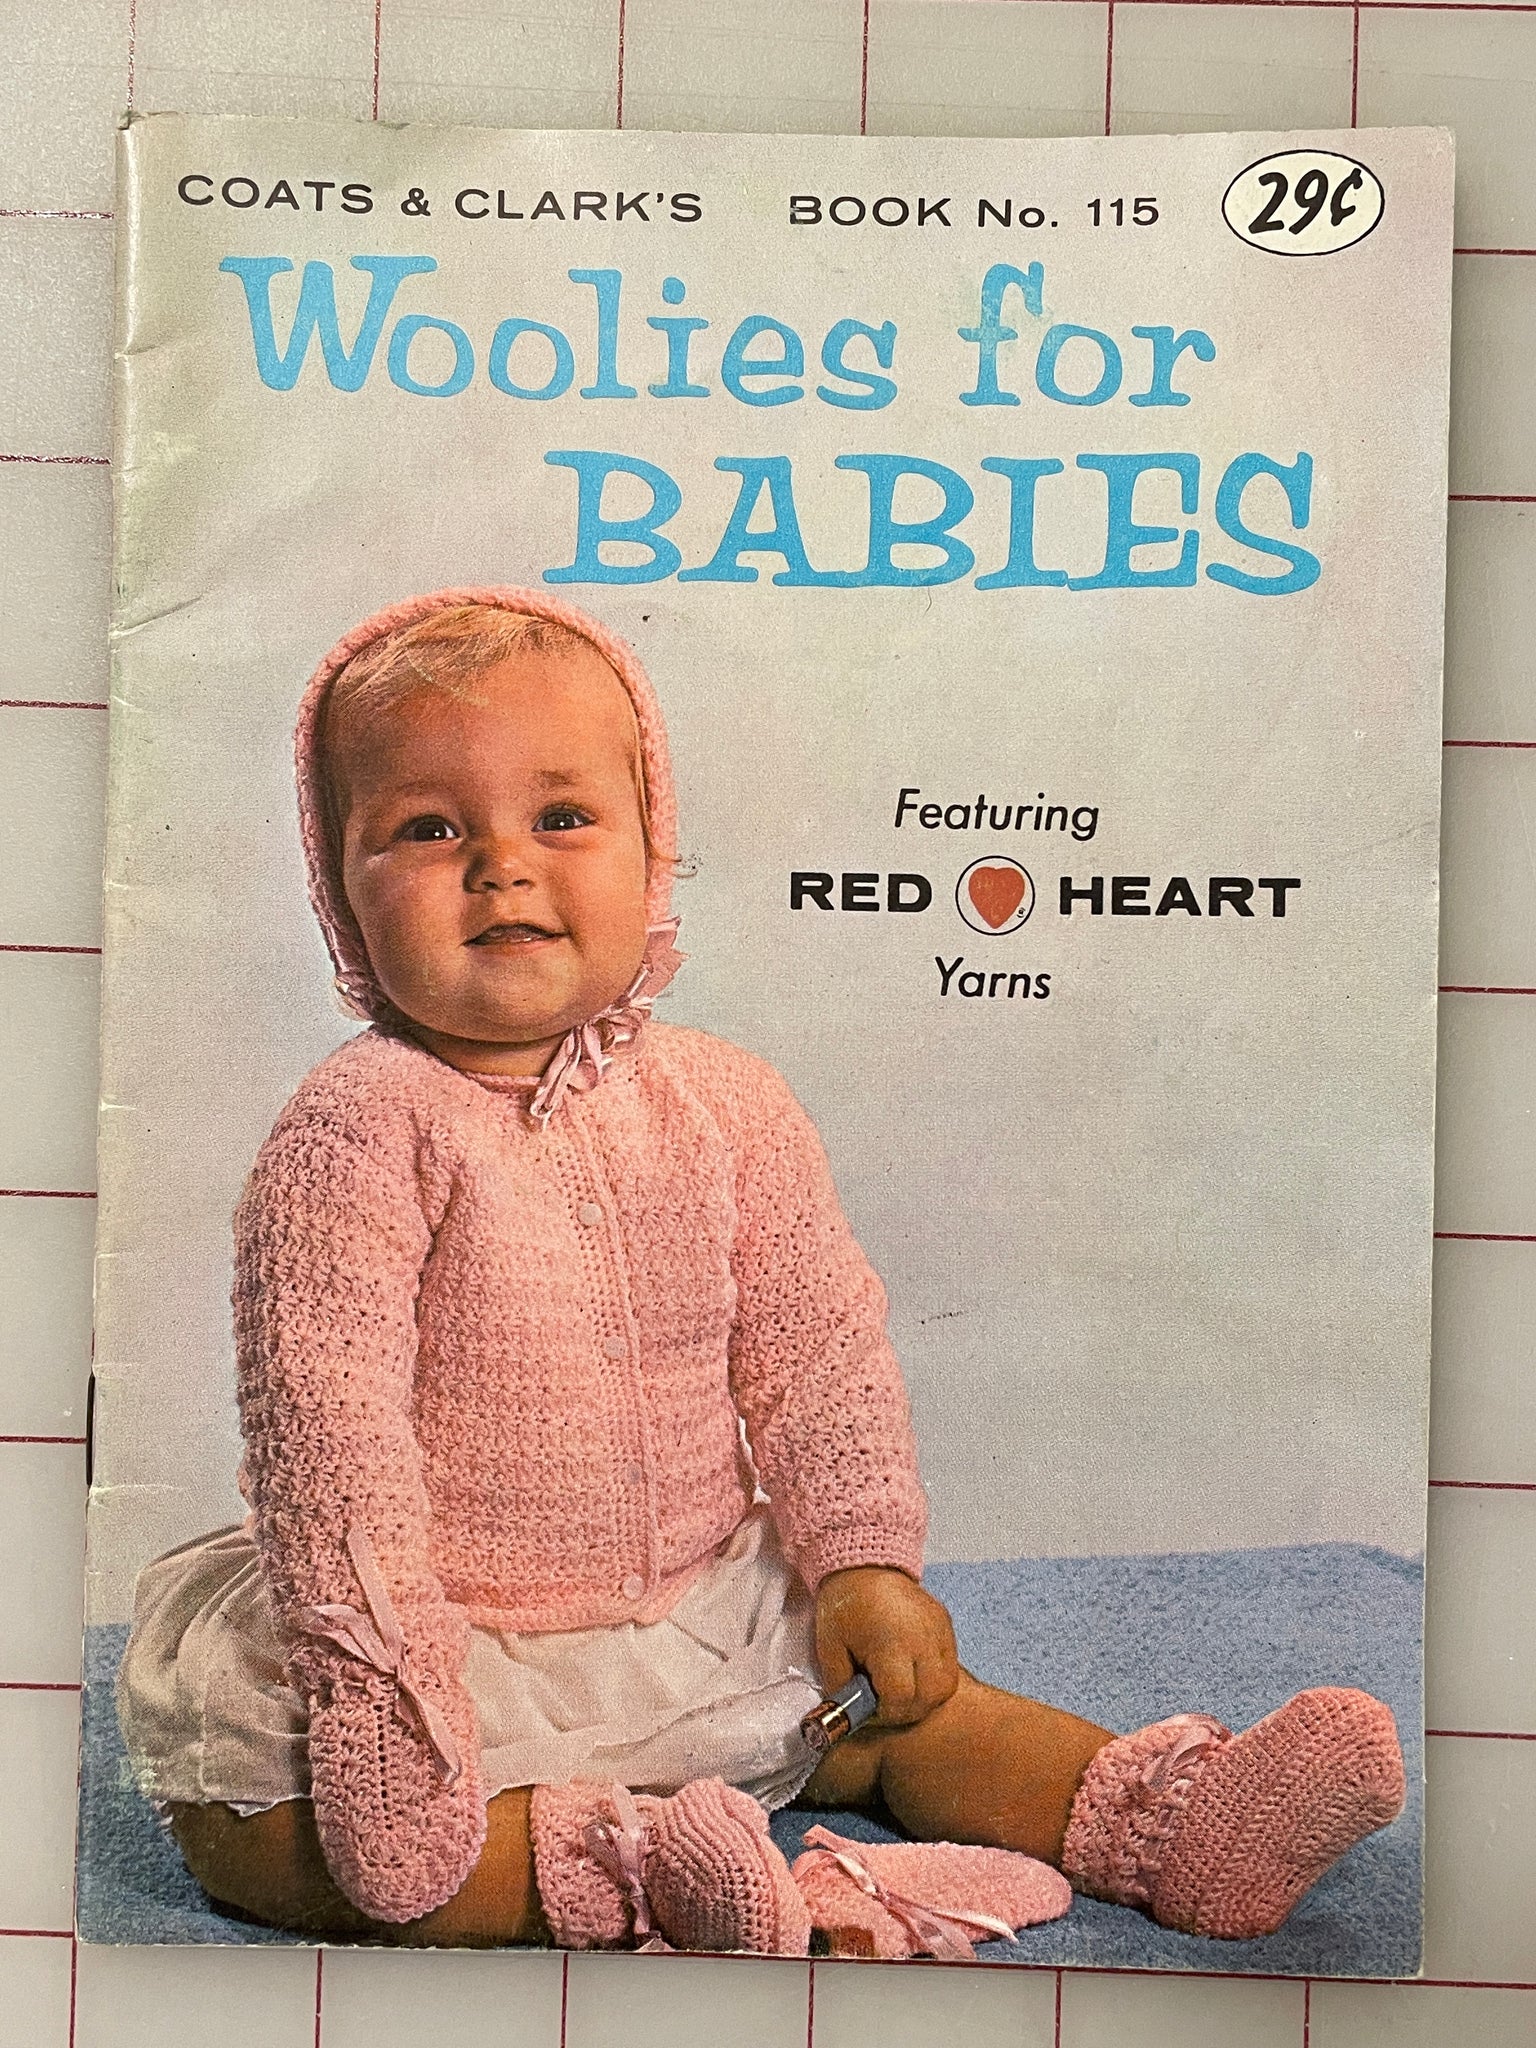 SALE 1959 Coats & Clark's Magazine - Woolies for Babies